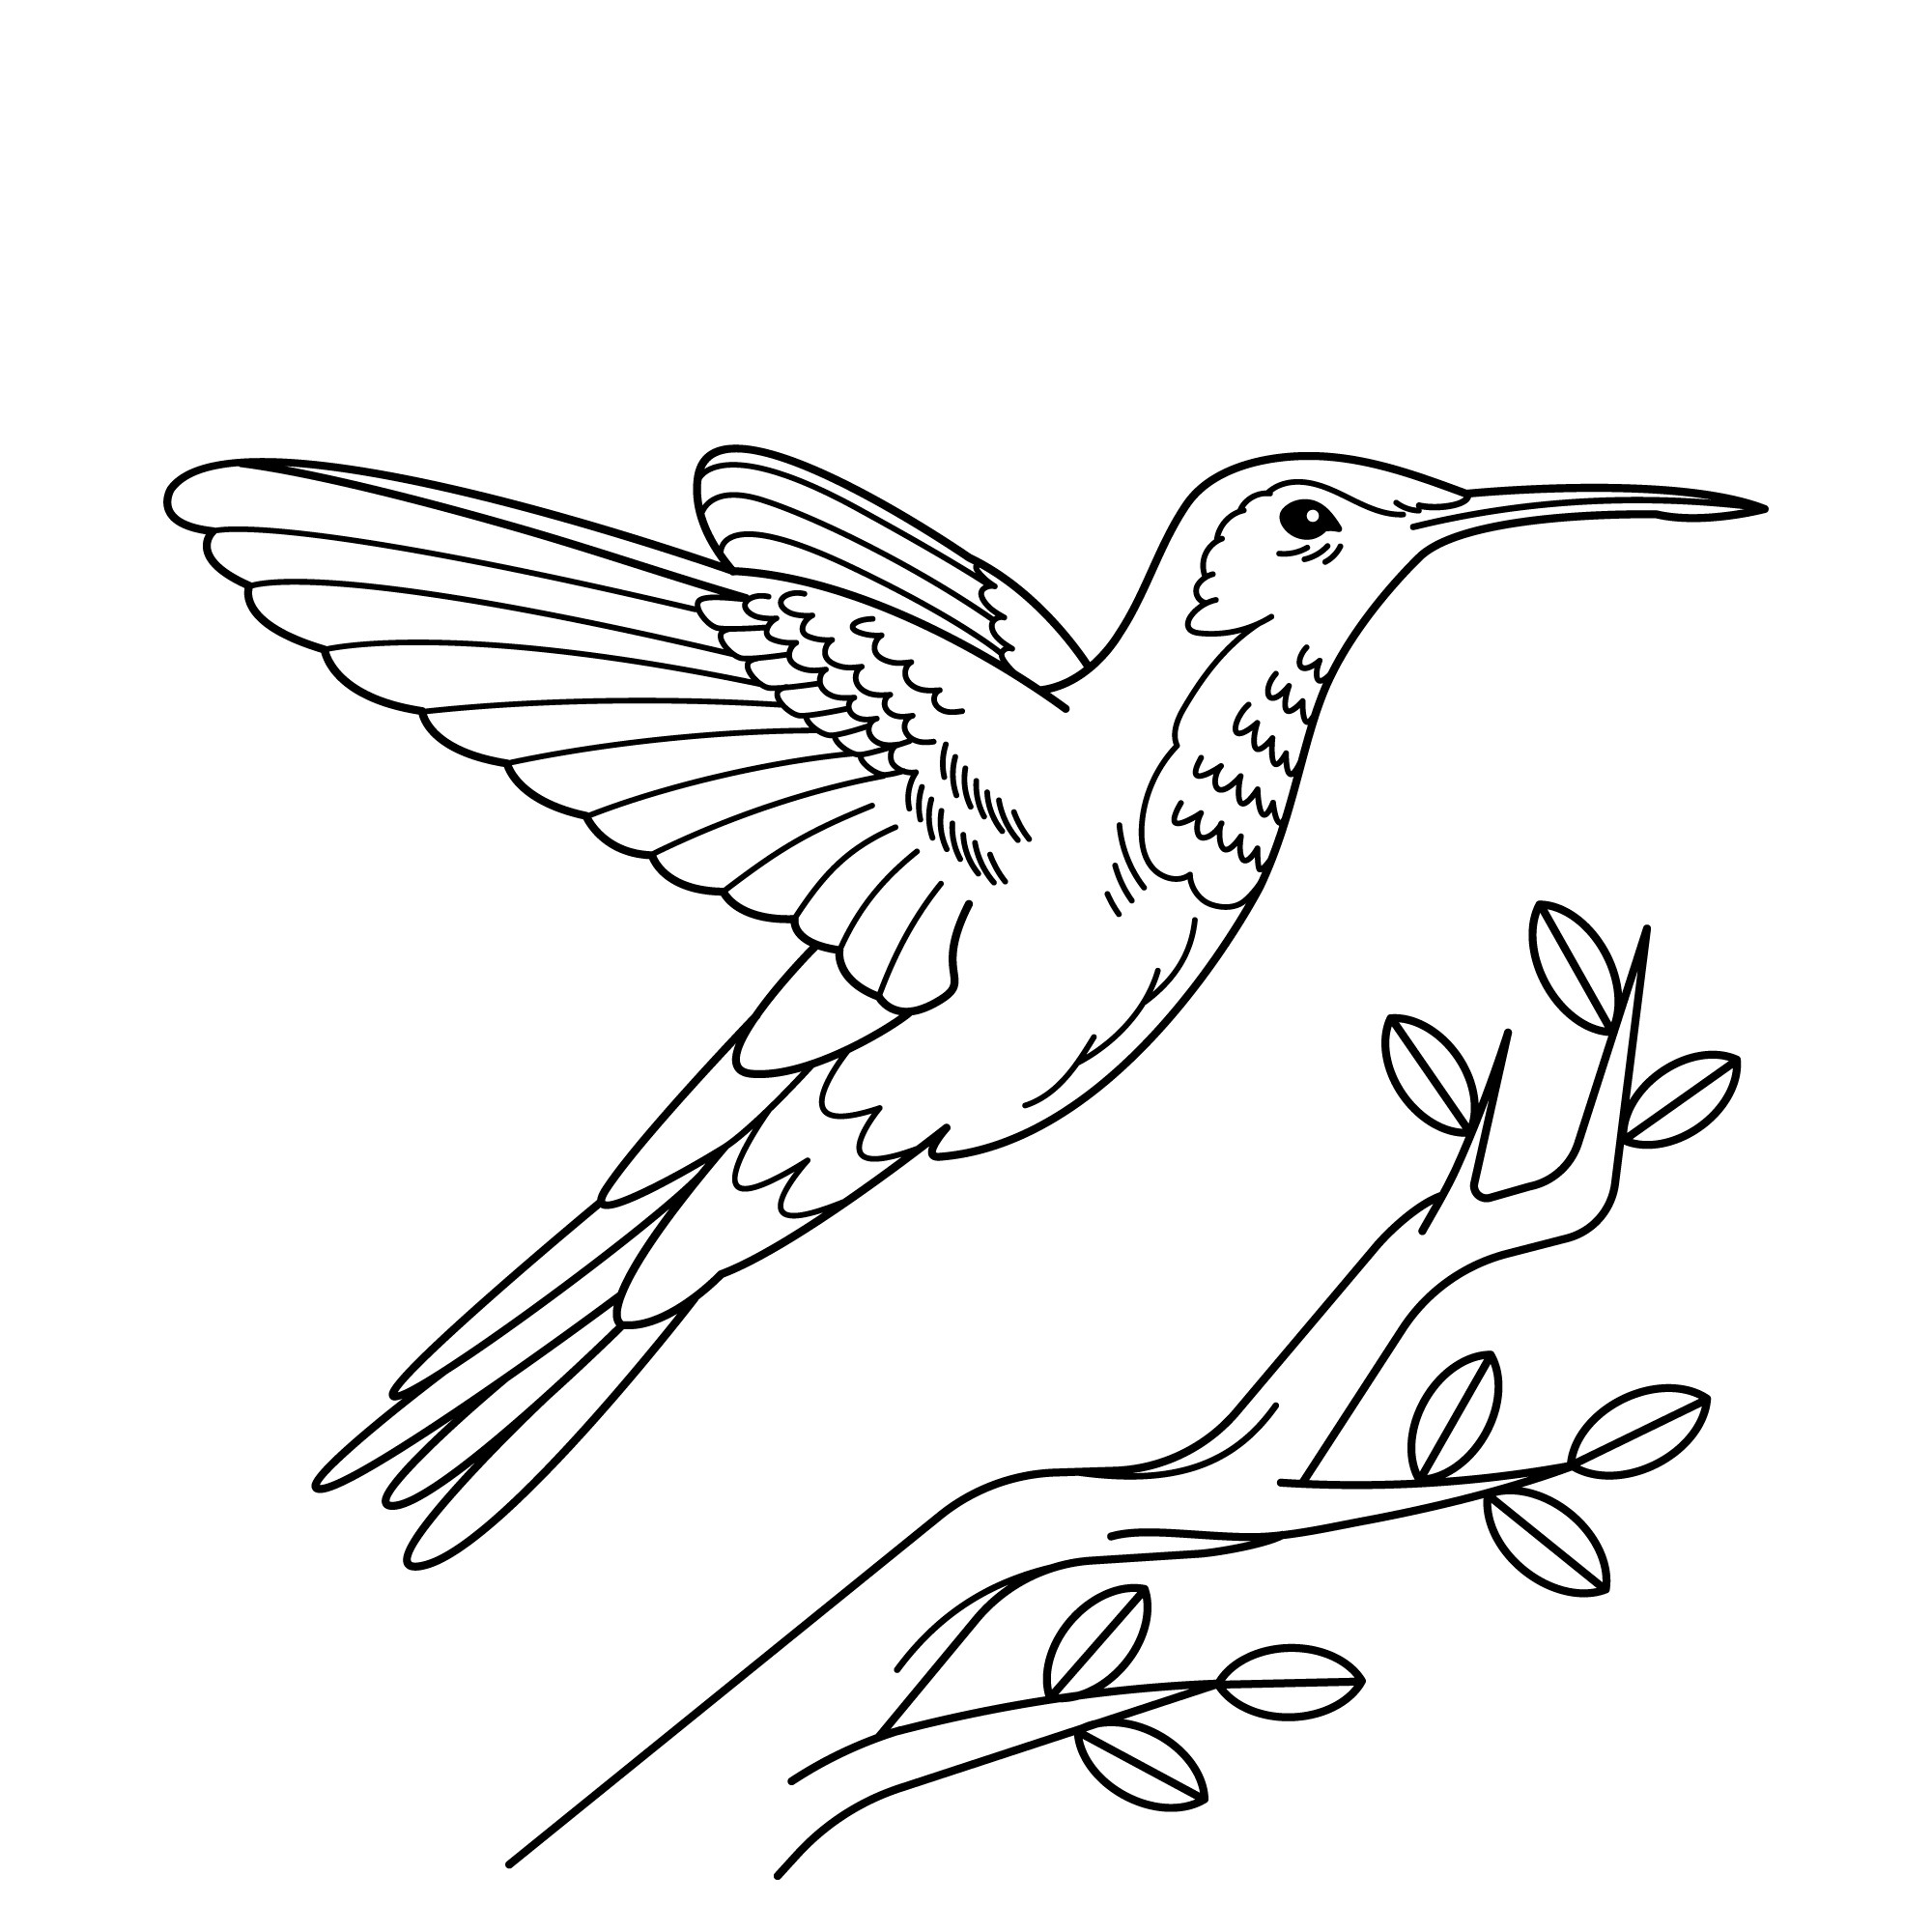 Раскраска для детей: птичка колибри в полете над веткой